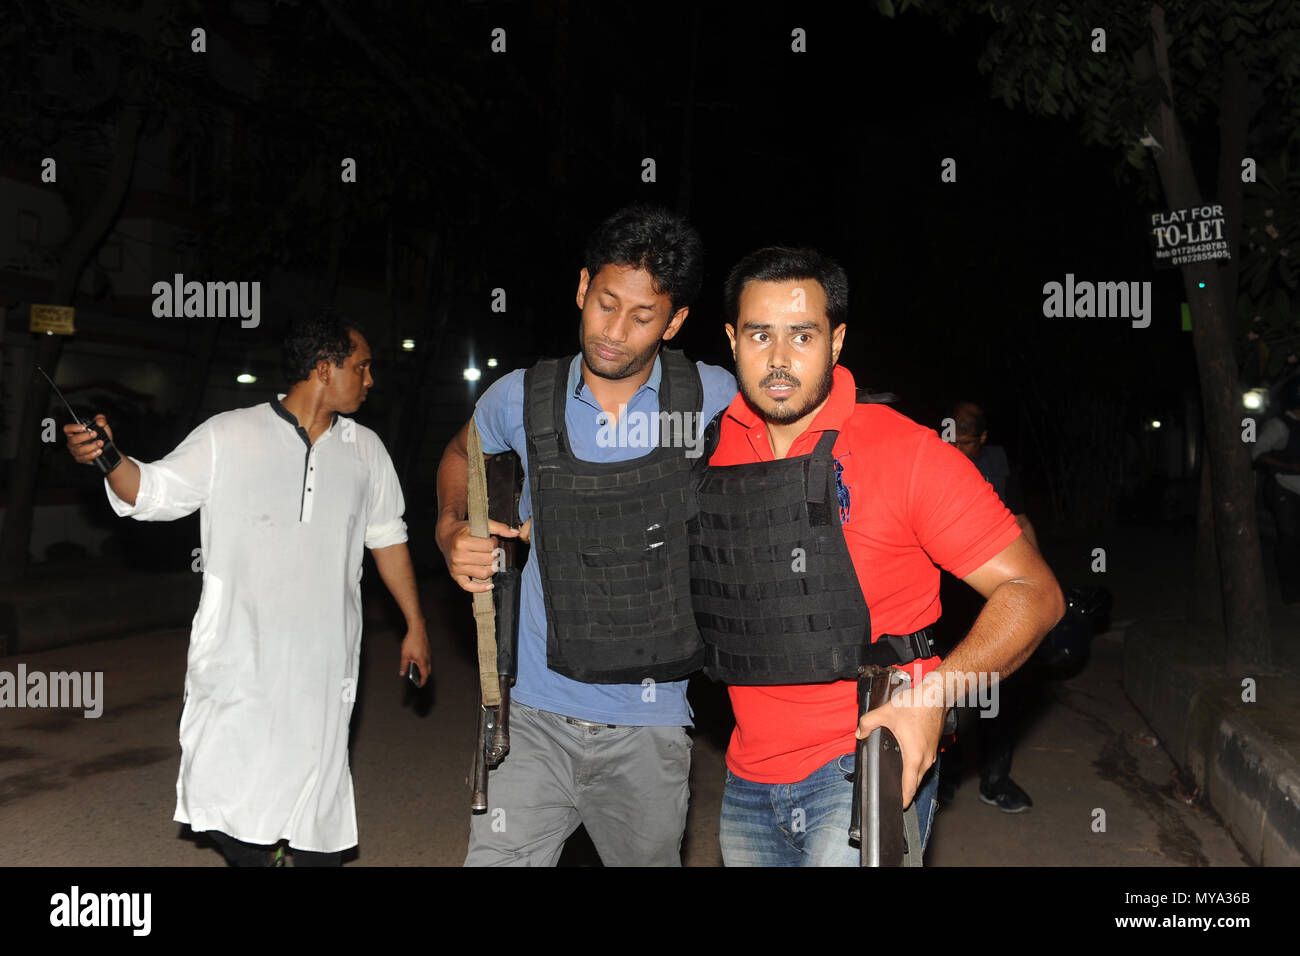 Dhaka, Bangladesh - 01 juillet 2016 : police effectue un homme blessé près du restaurant Boulangerie artisanale Holey lors d'une attaque par des hommes armés non identifiés dans l'Adh Banque D'Images